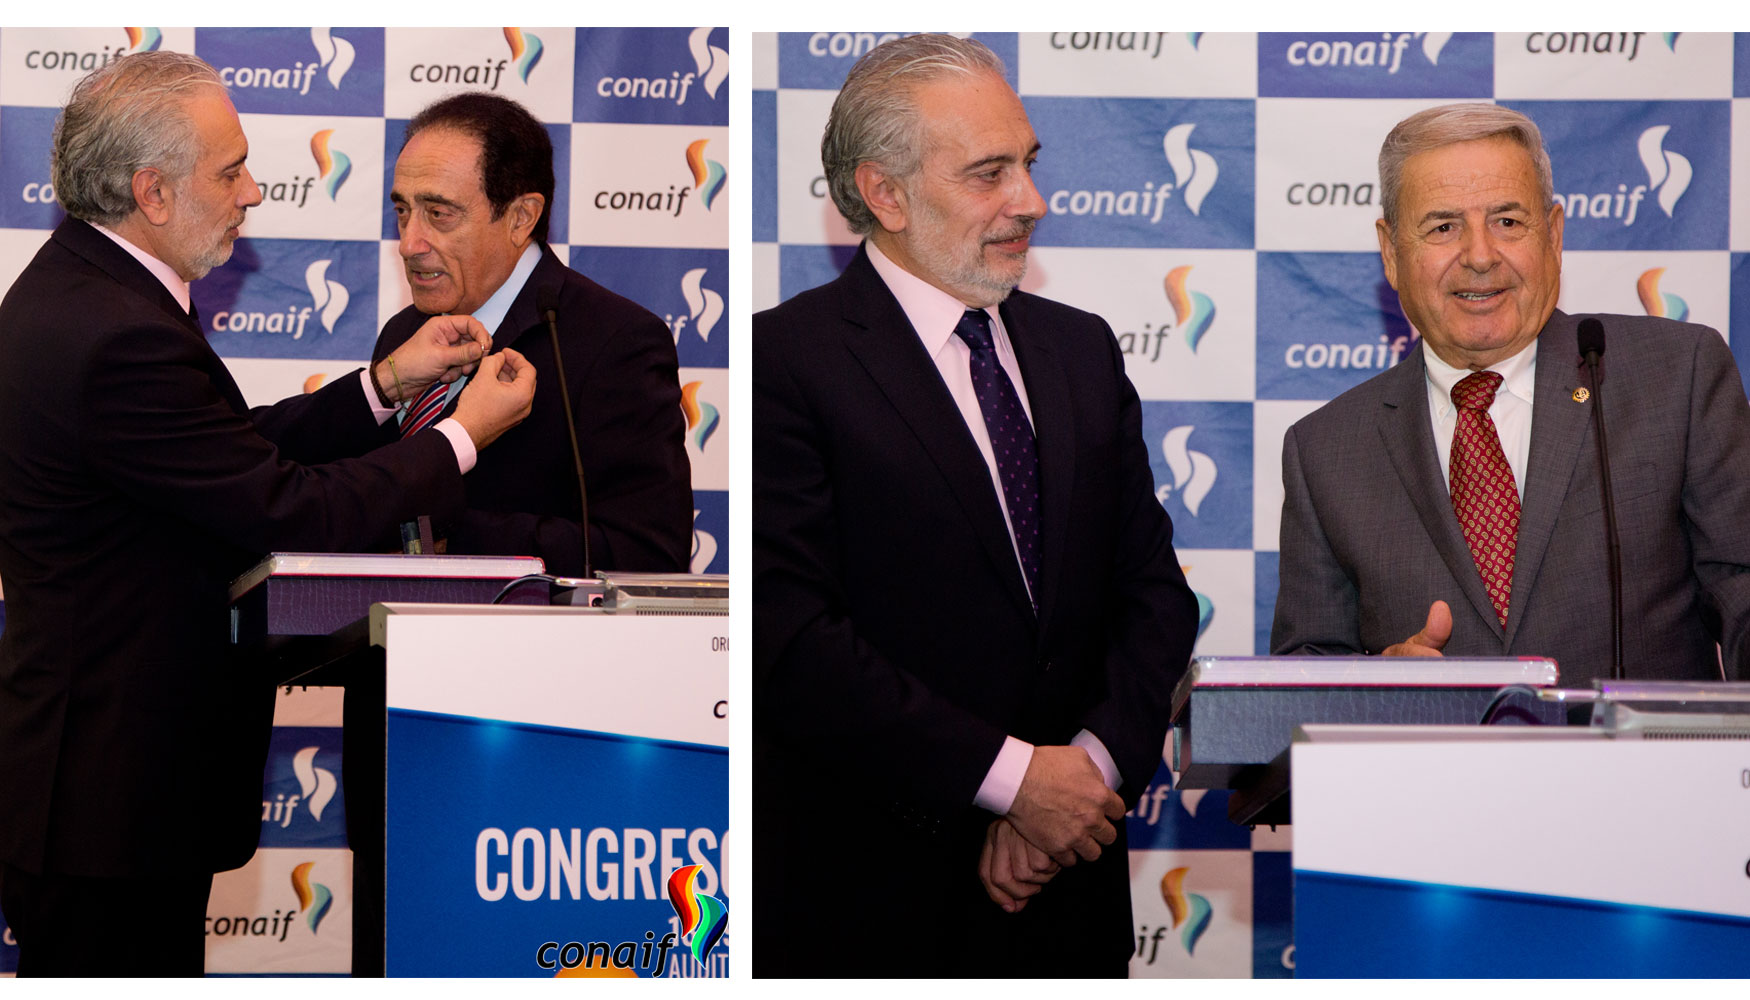 Los reconocimientos de Conaif en este Congreso han sido para Francesc Balagu y Obdulio Falcn